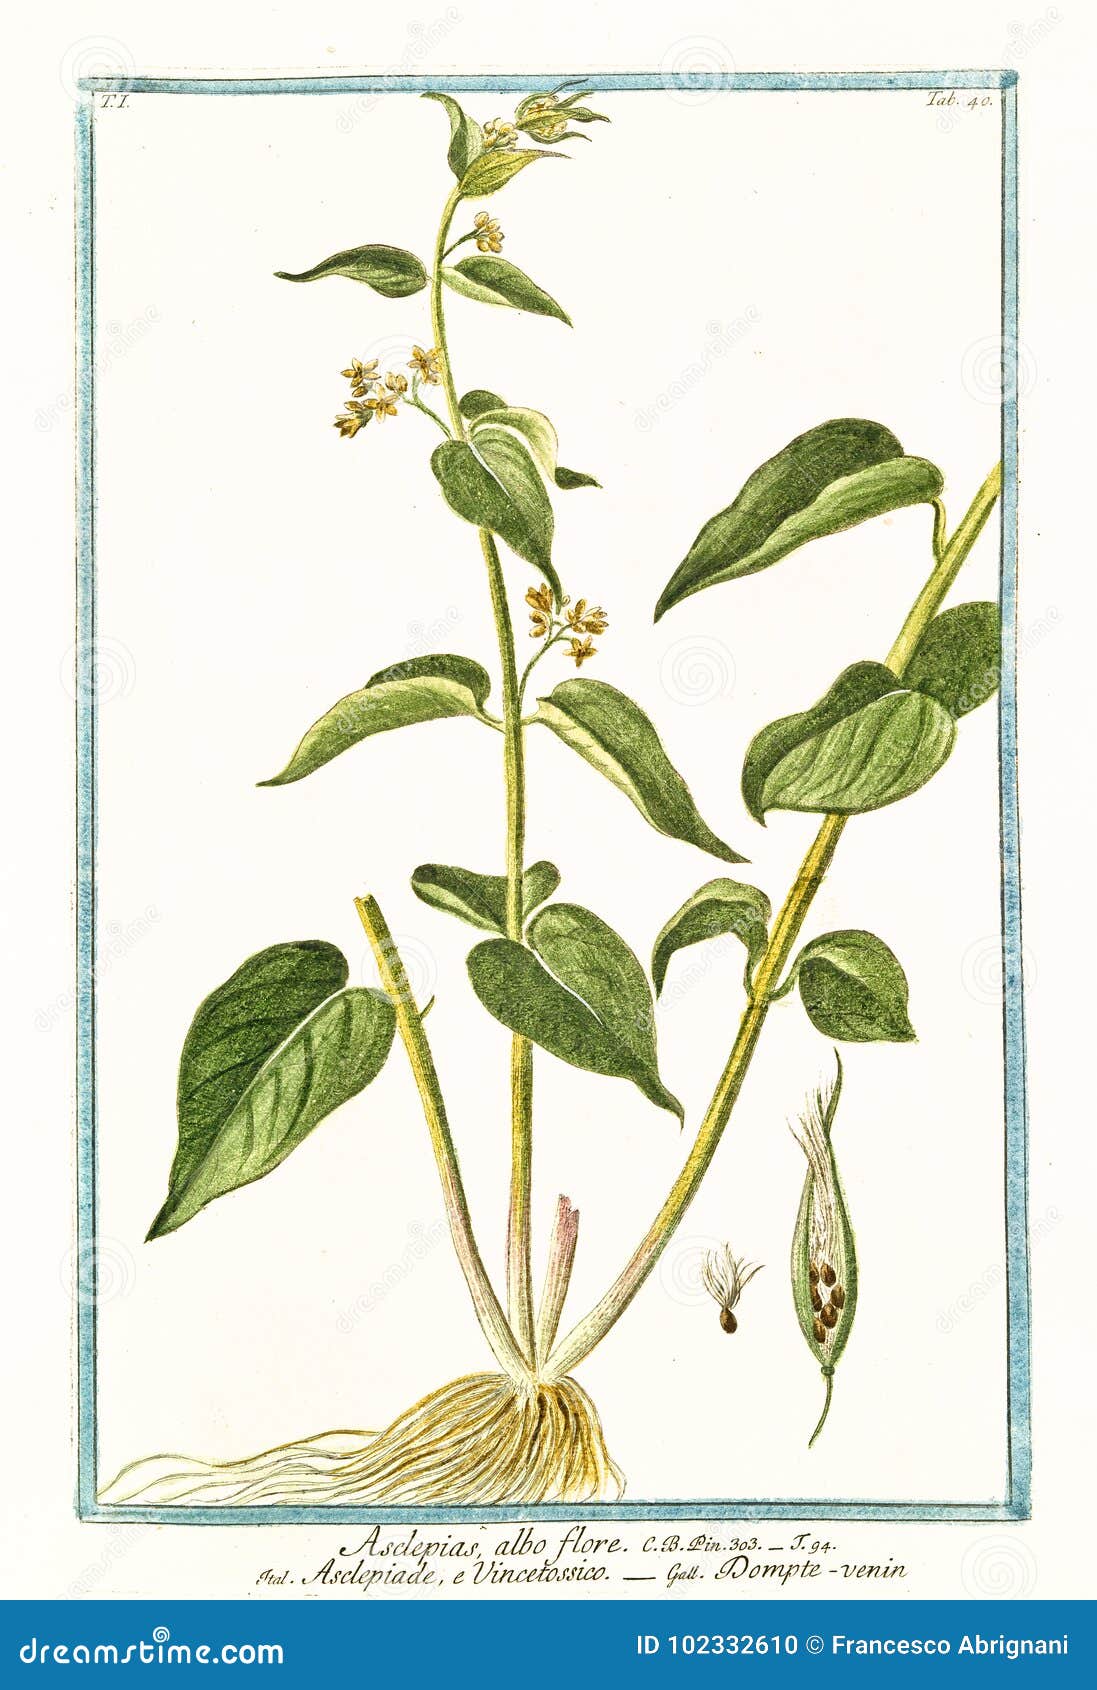 asclepias albo flore